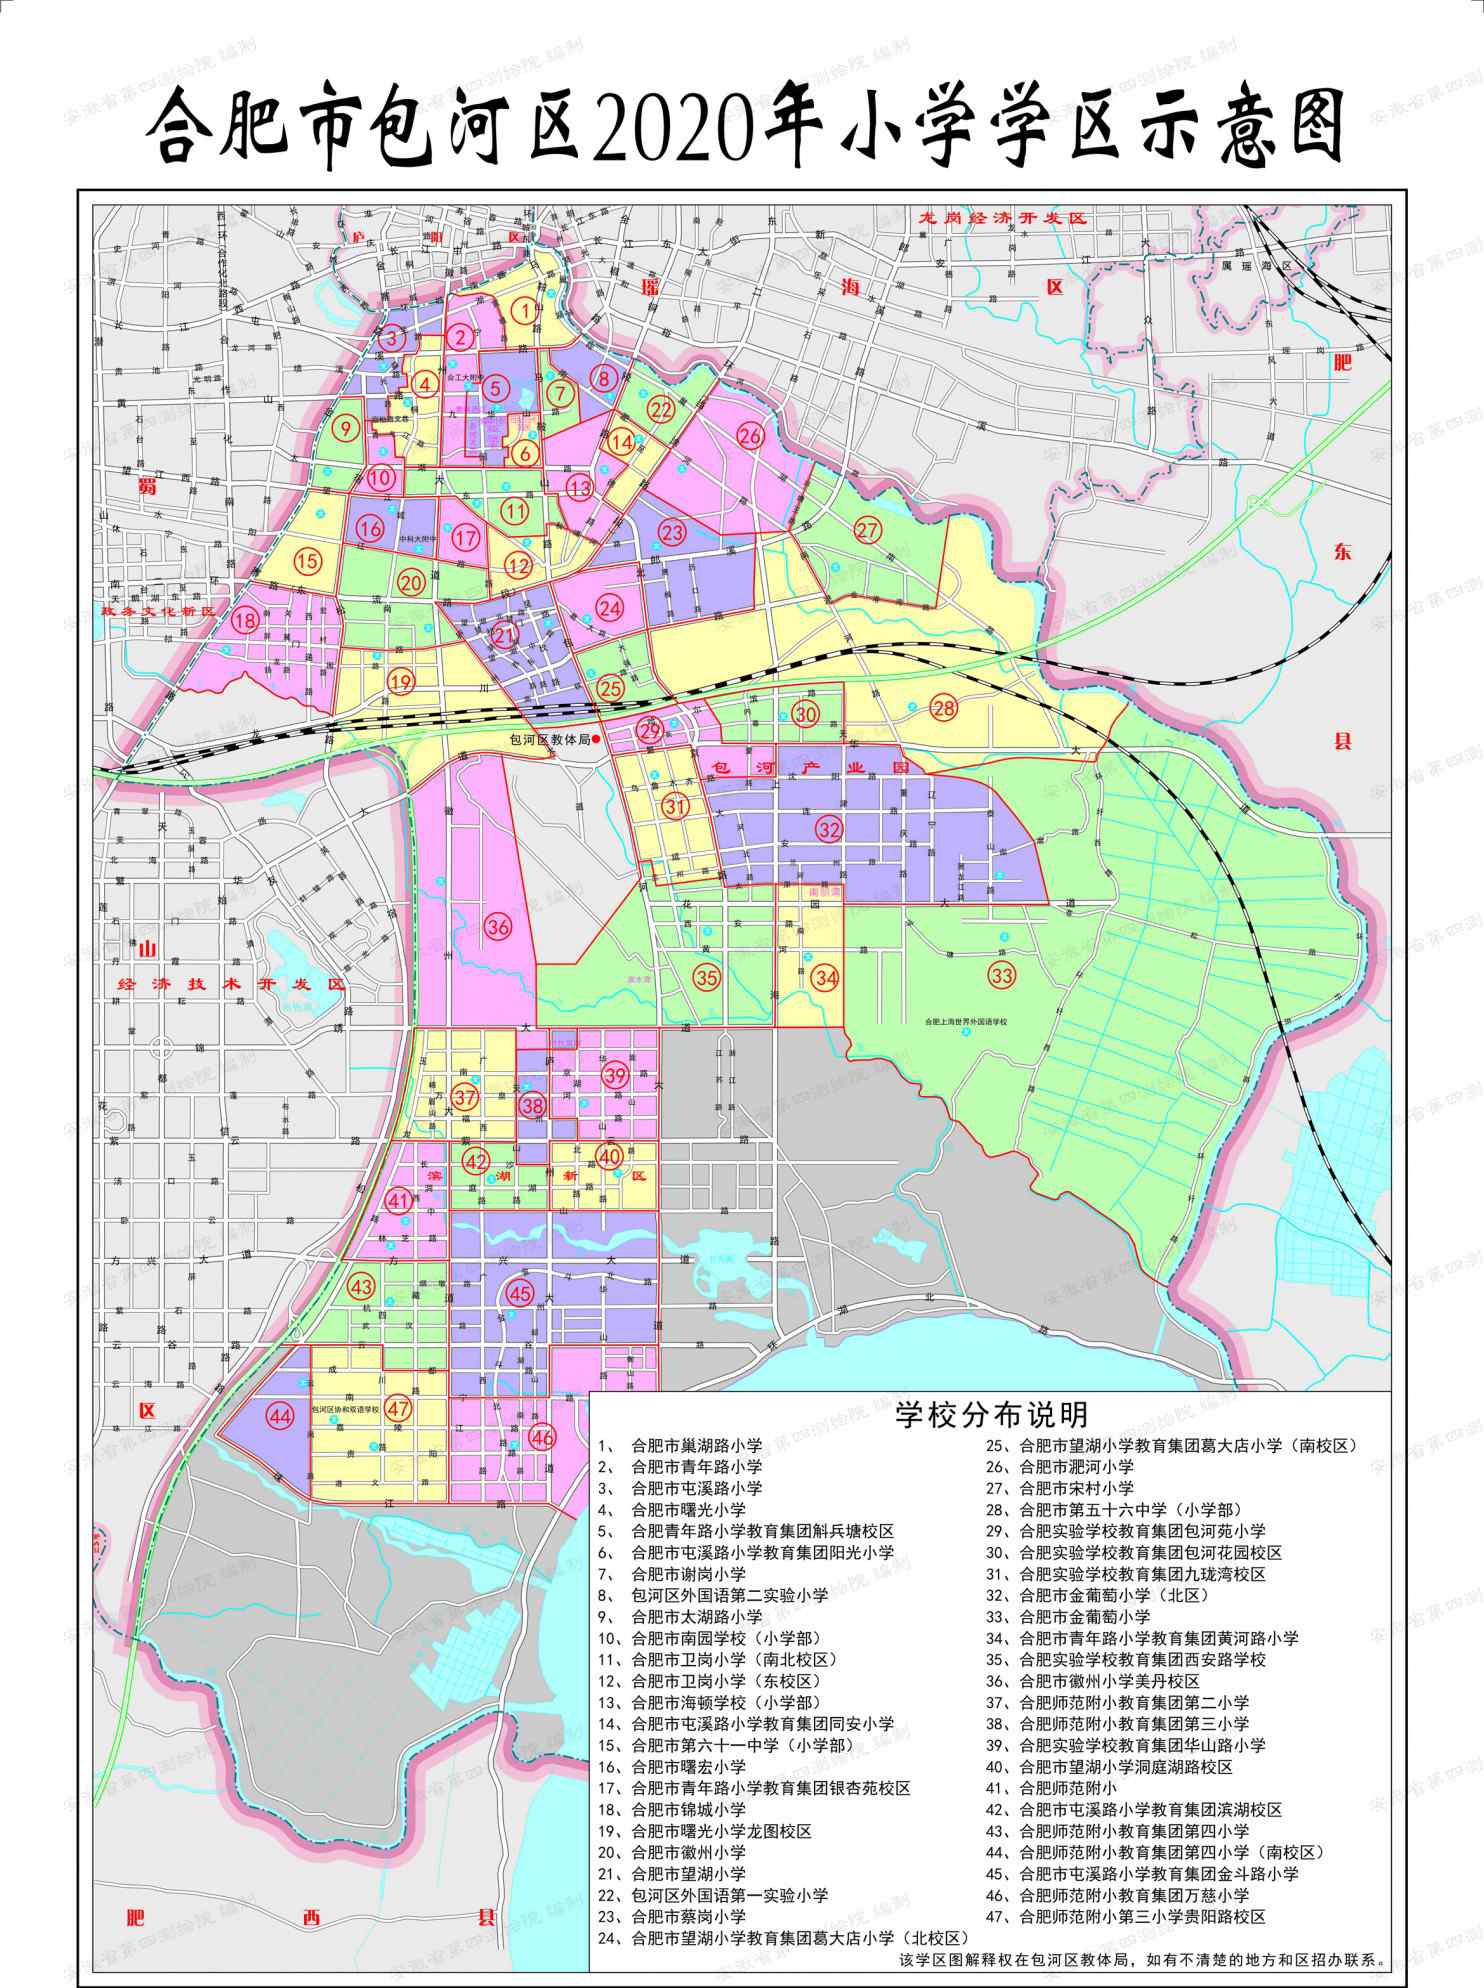 合肥包河区地图 最新合肥学区划分图公布！2020年合肥市包河区中小学学区划分方案出炉